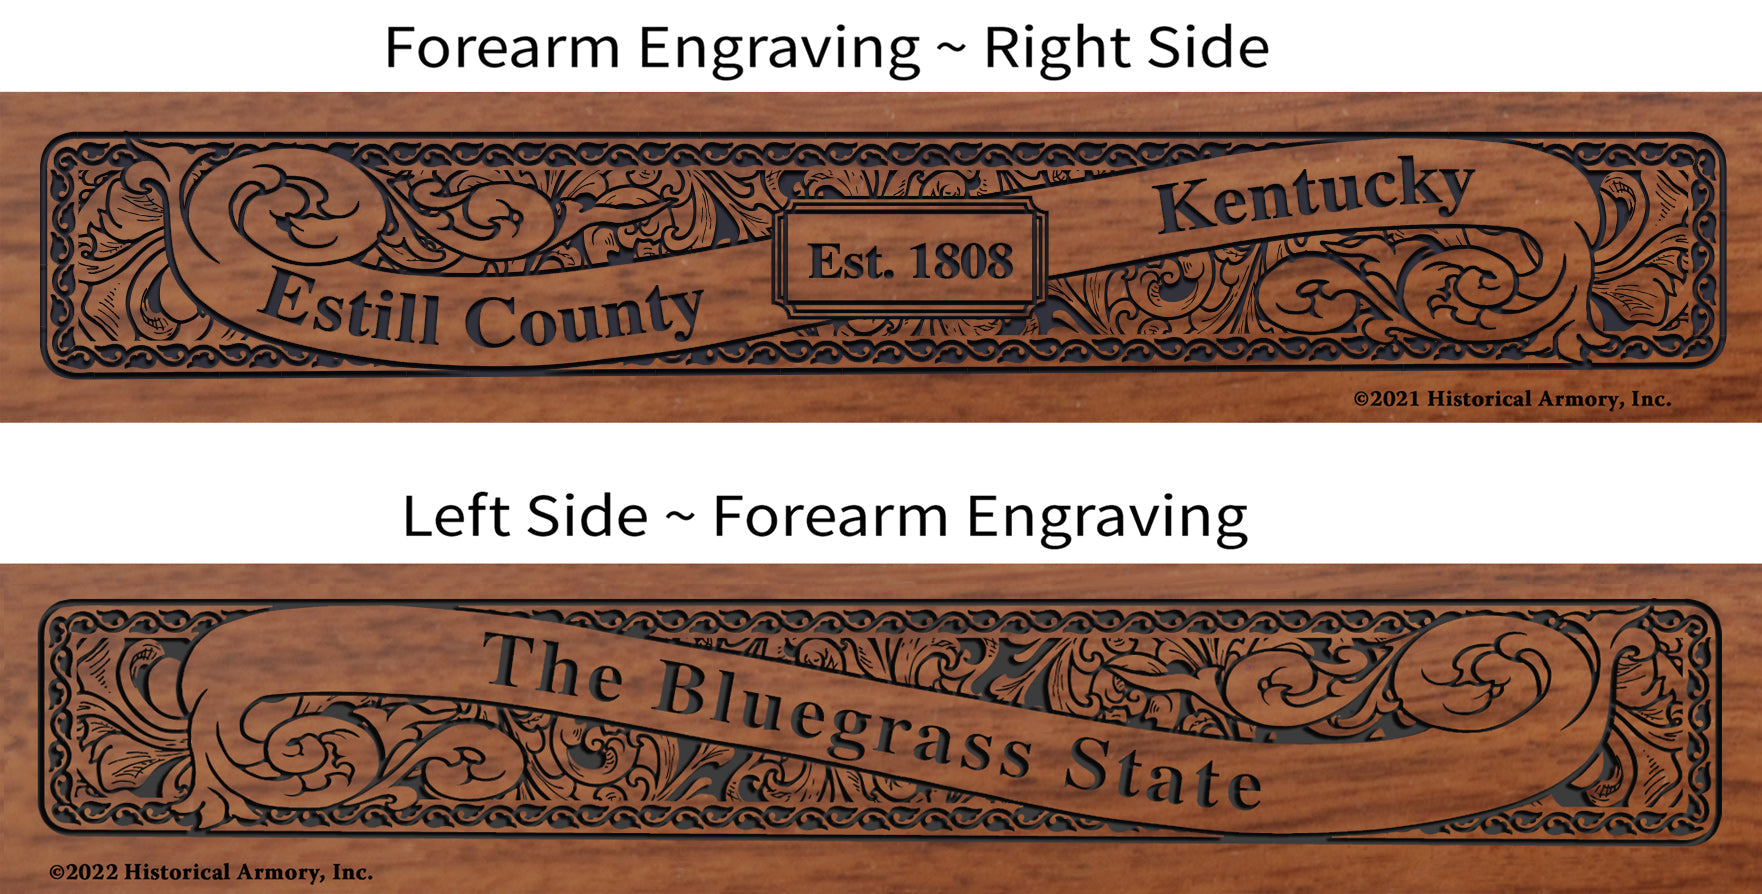 Estill County Kentucky Engraved Rifle Forearm